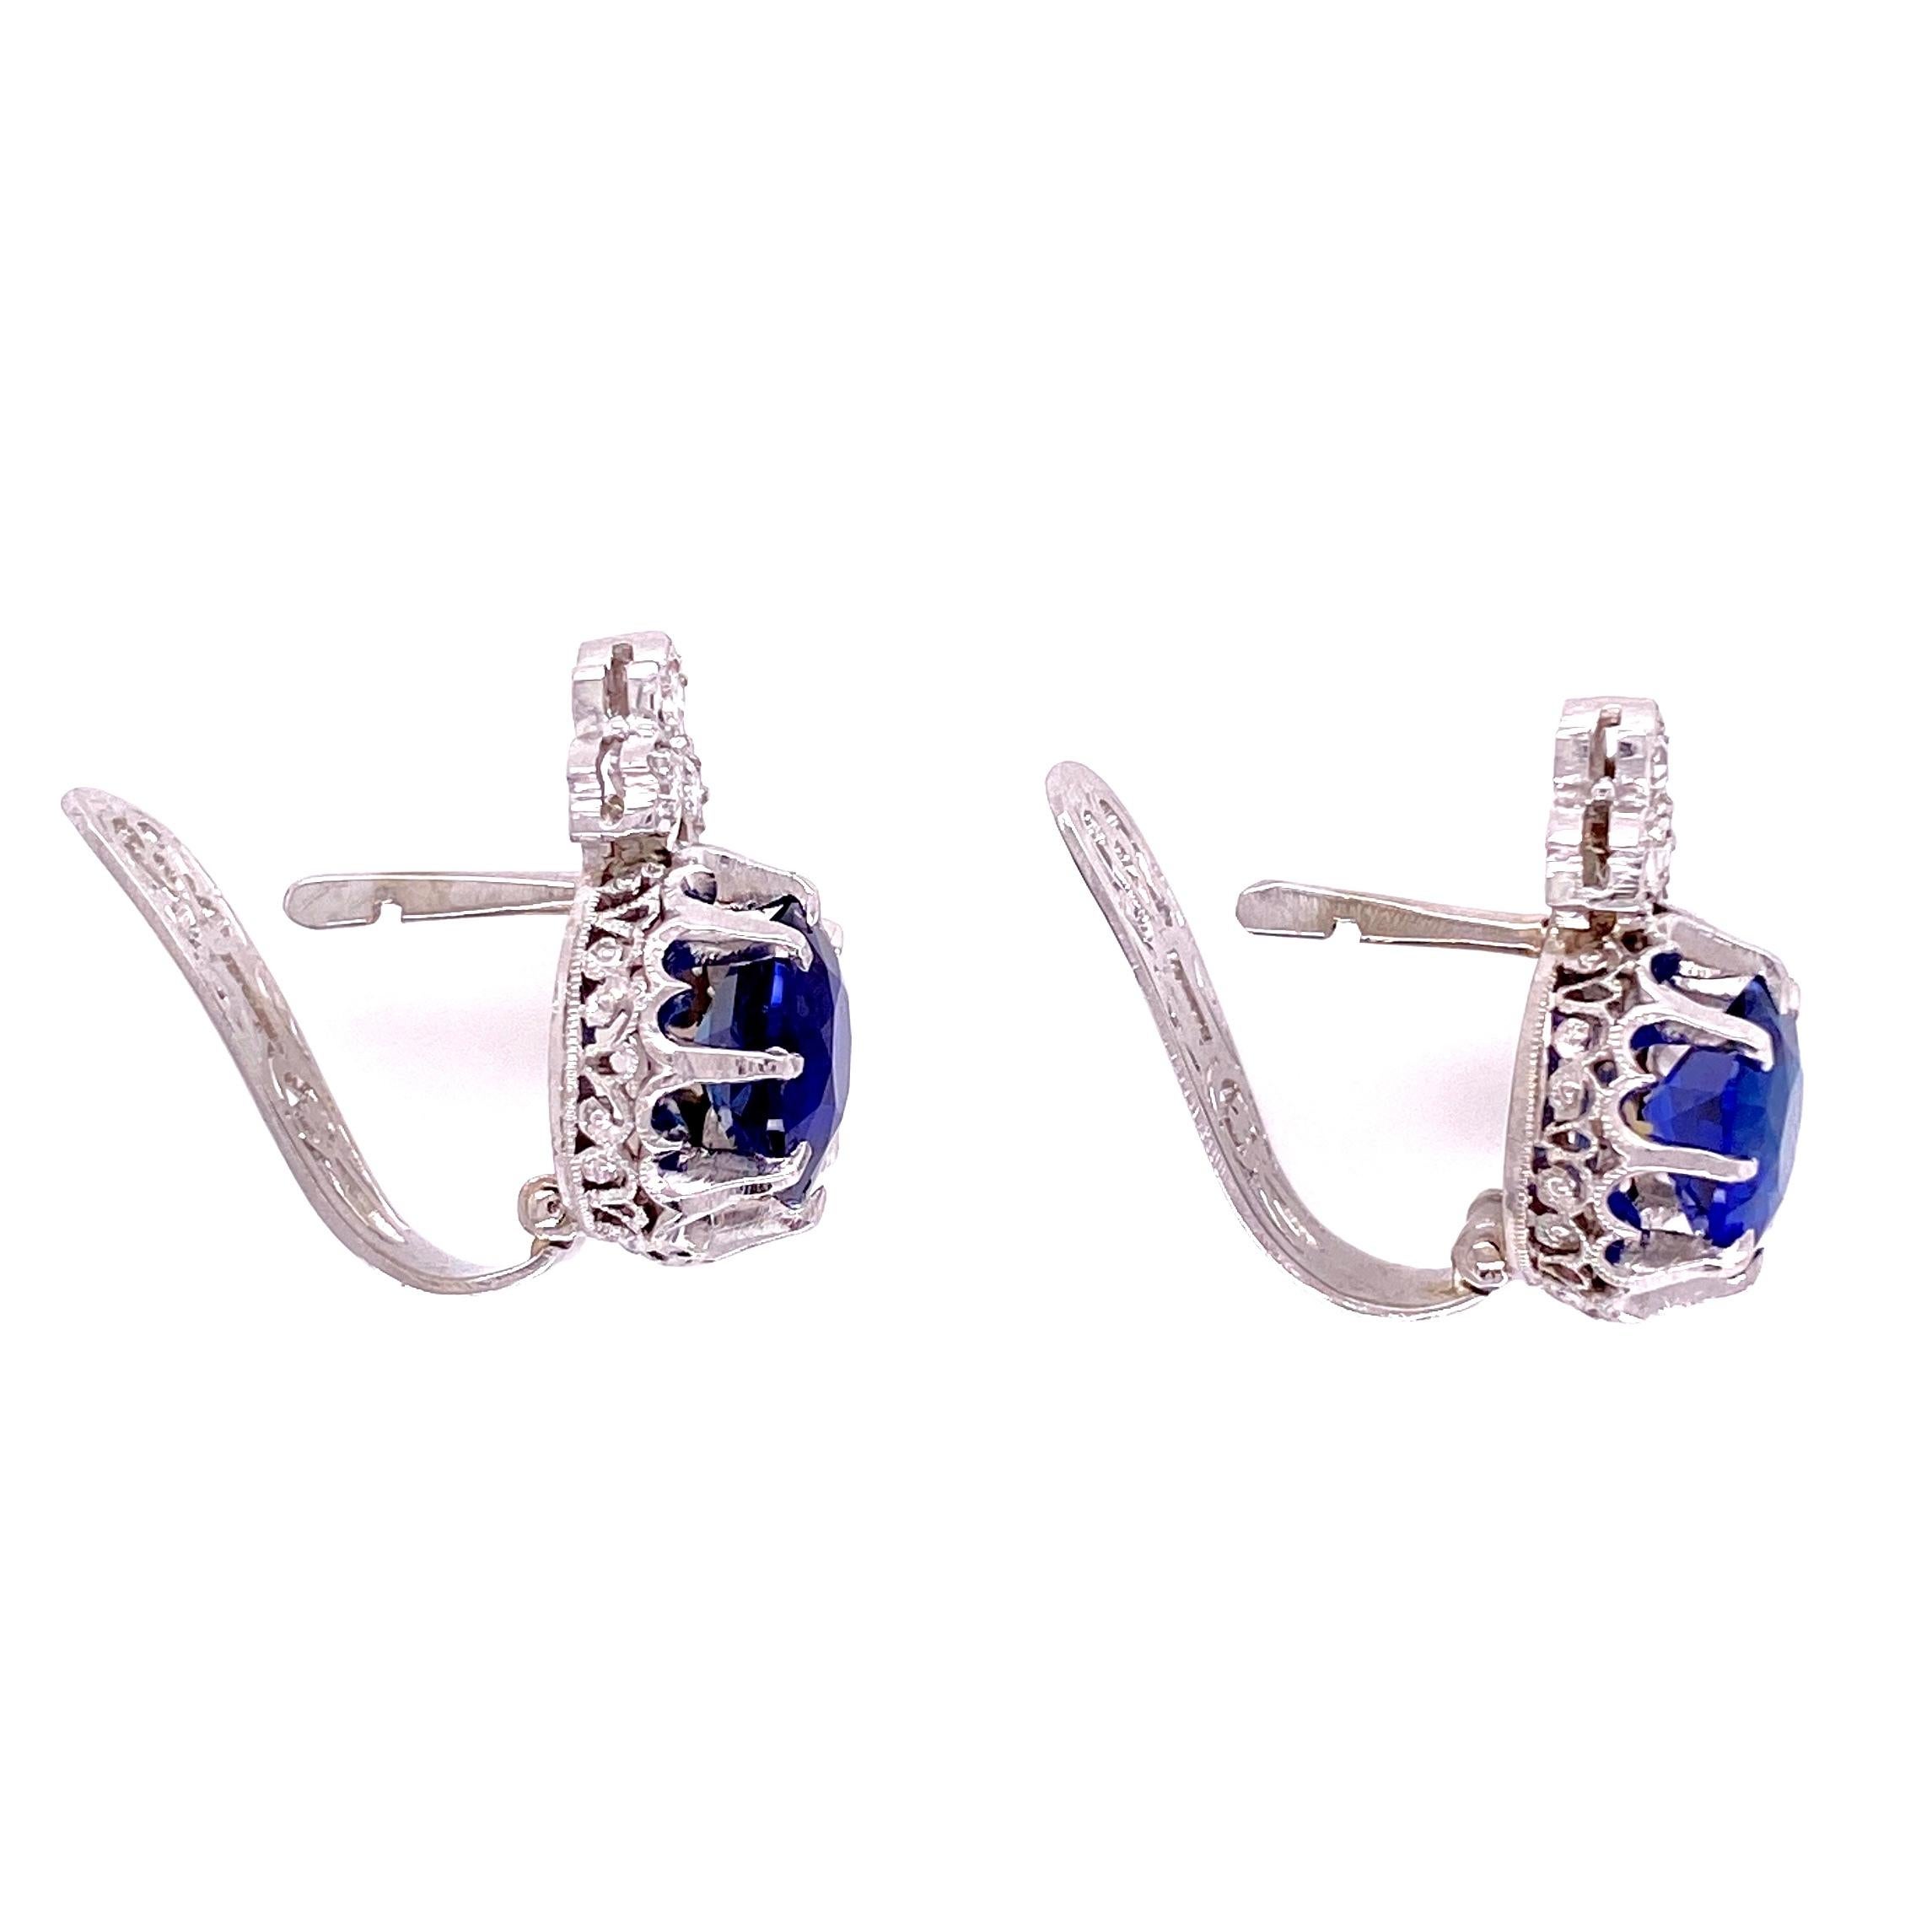 Einfach schön! Fein detaillierte Art-Deco-Revival-Ohrringe mit Saphiren und Diamanten. Jedes Zentrum sicher mit einem blauen Saphir besetzt; ca. Gesamtgewicht der 2 Saphire 3,64 tcw, umgeben von Diamanten, ca. 0,20 tcw. Handgefertigte Platinfassung.